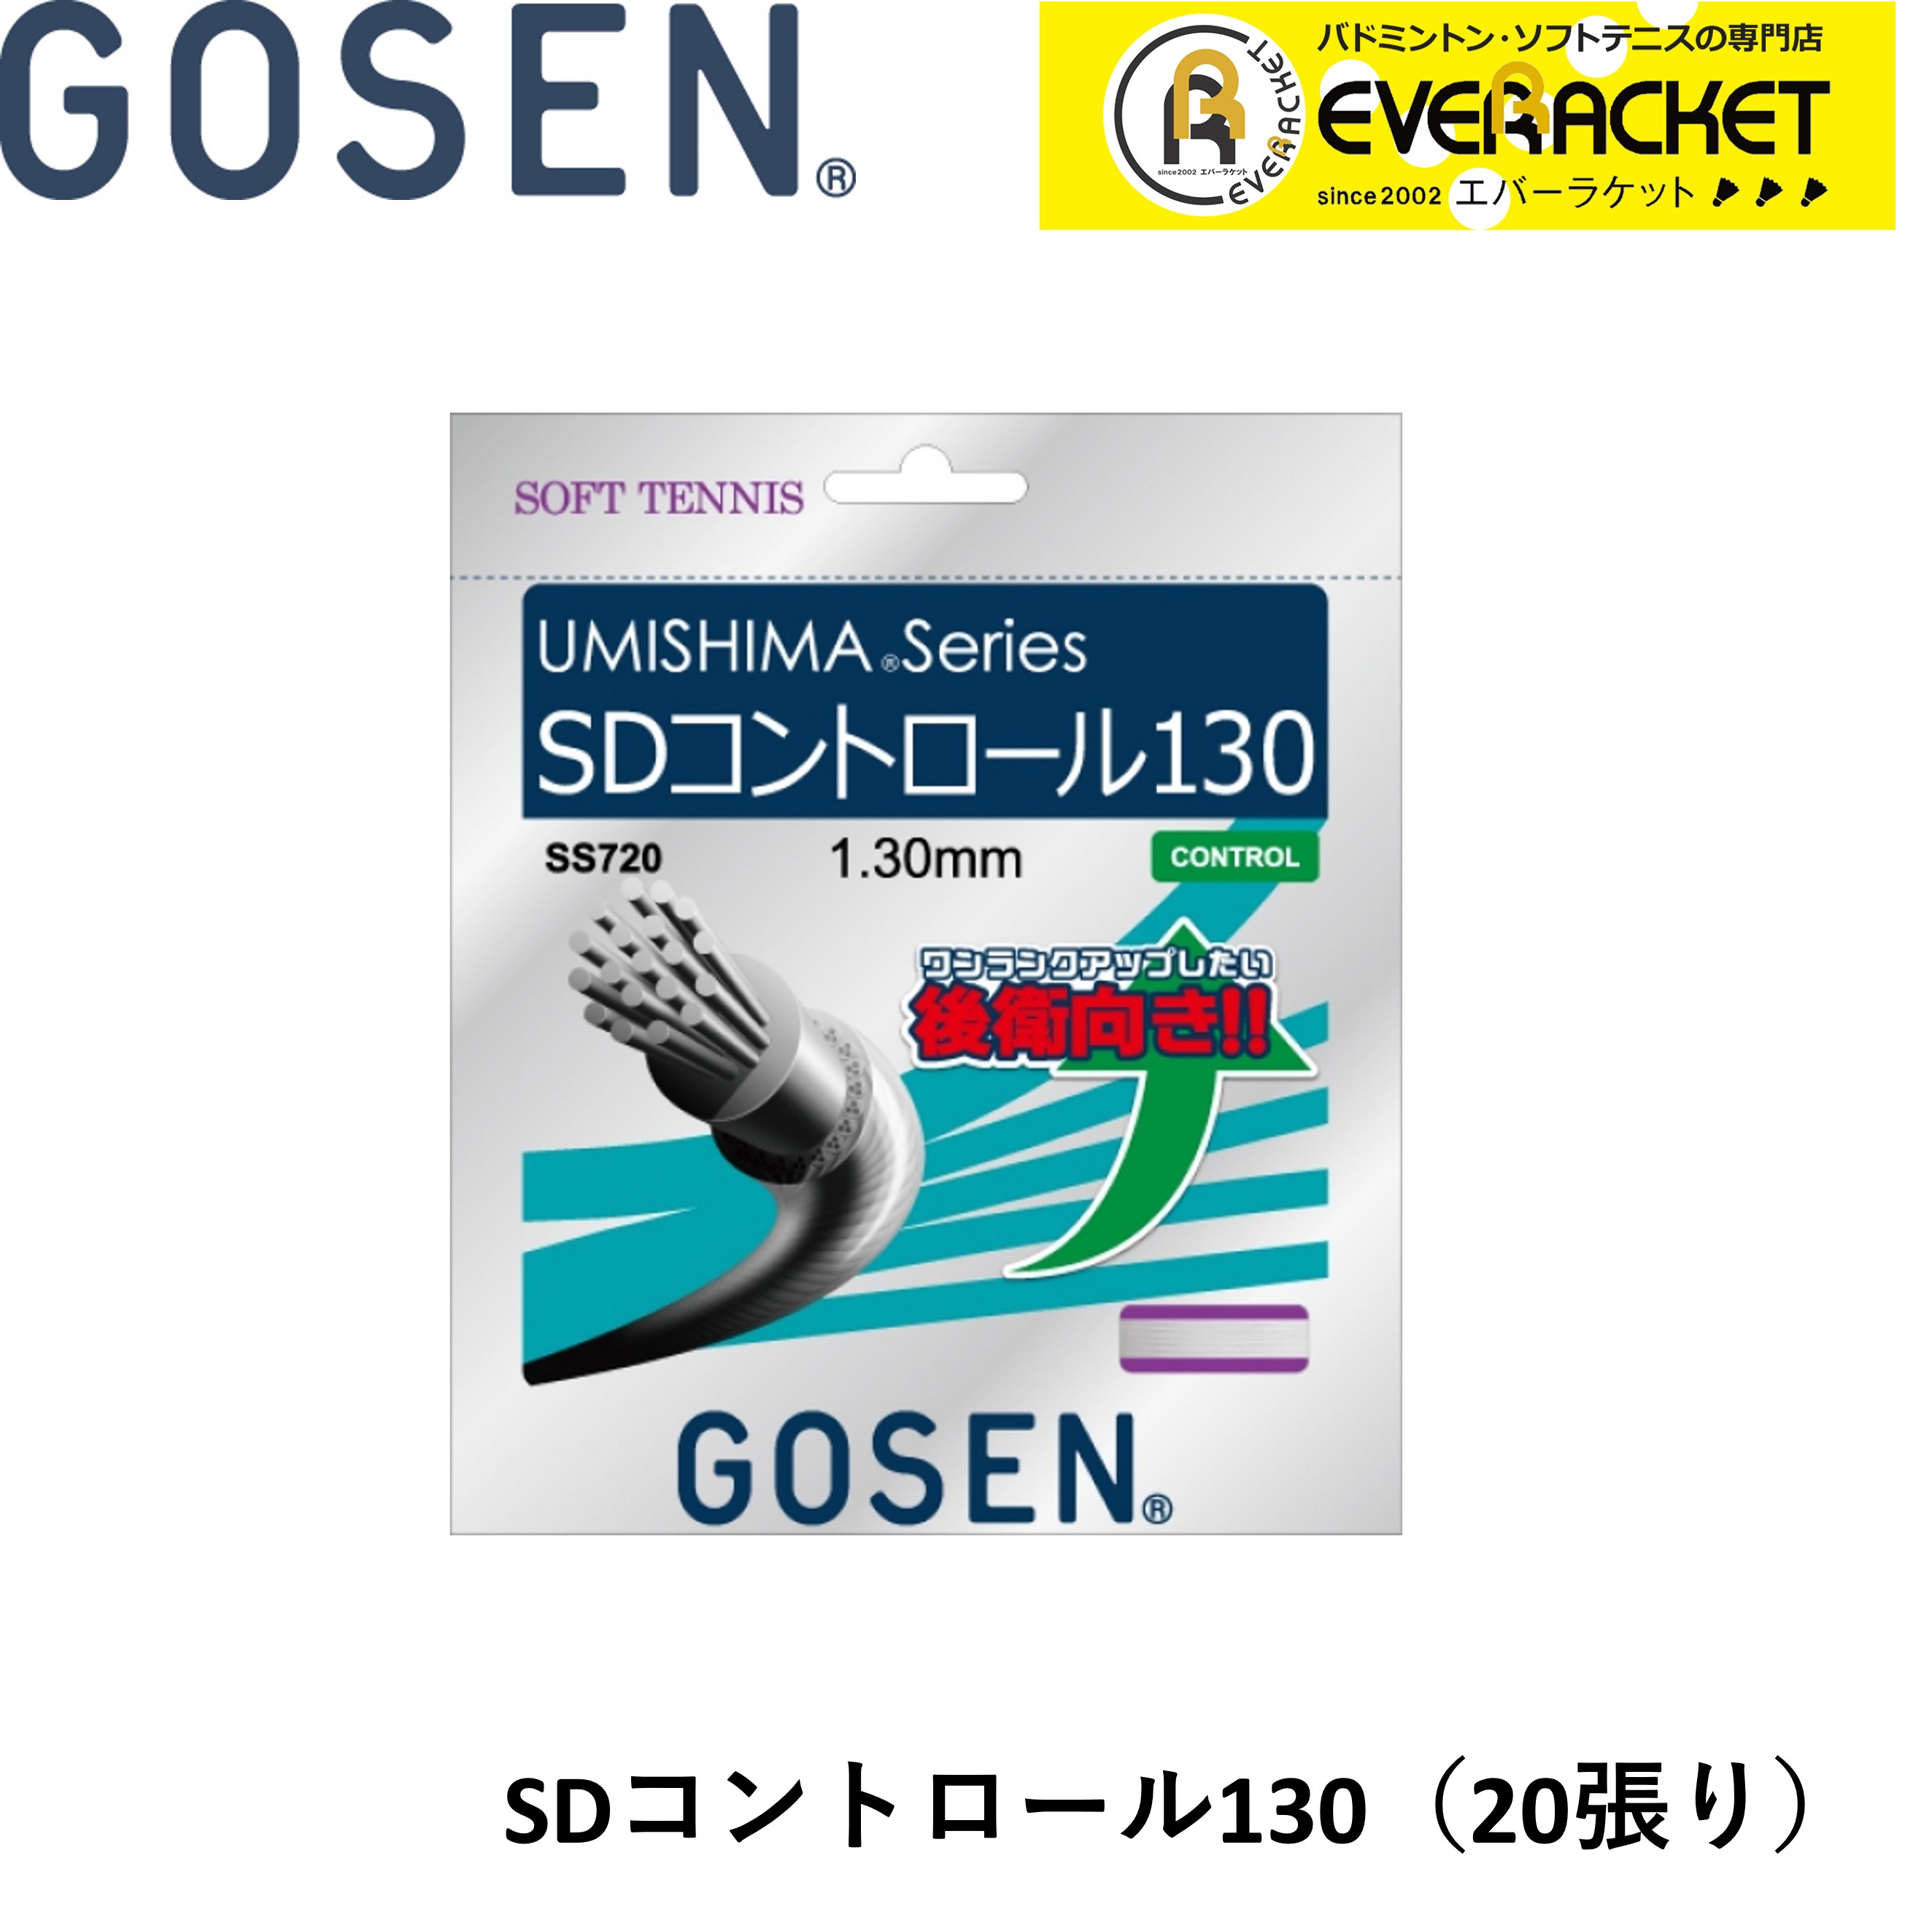 ゴーセン ゴーセン(GOSEN) MICRO II 15L(1.35mm) 12.2m×20張入り